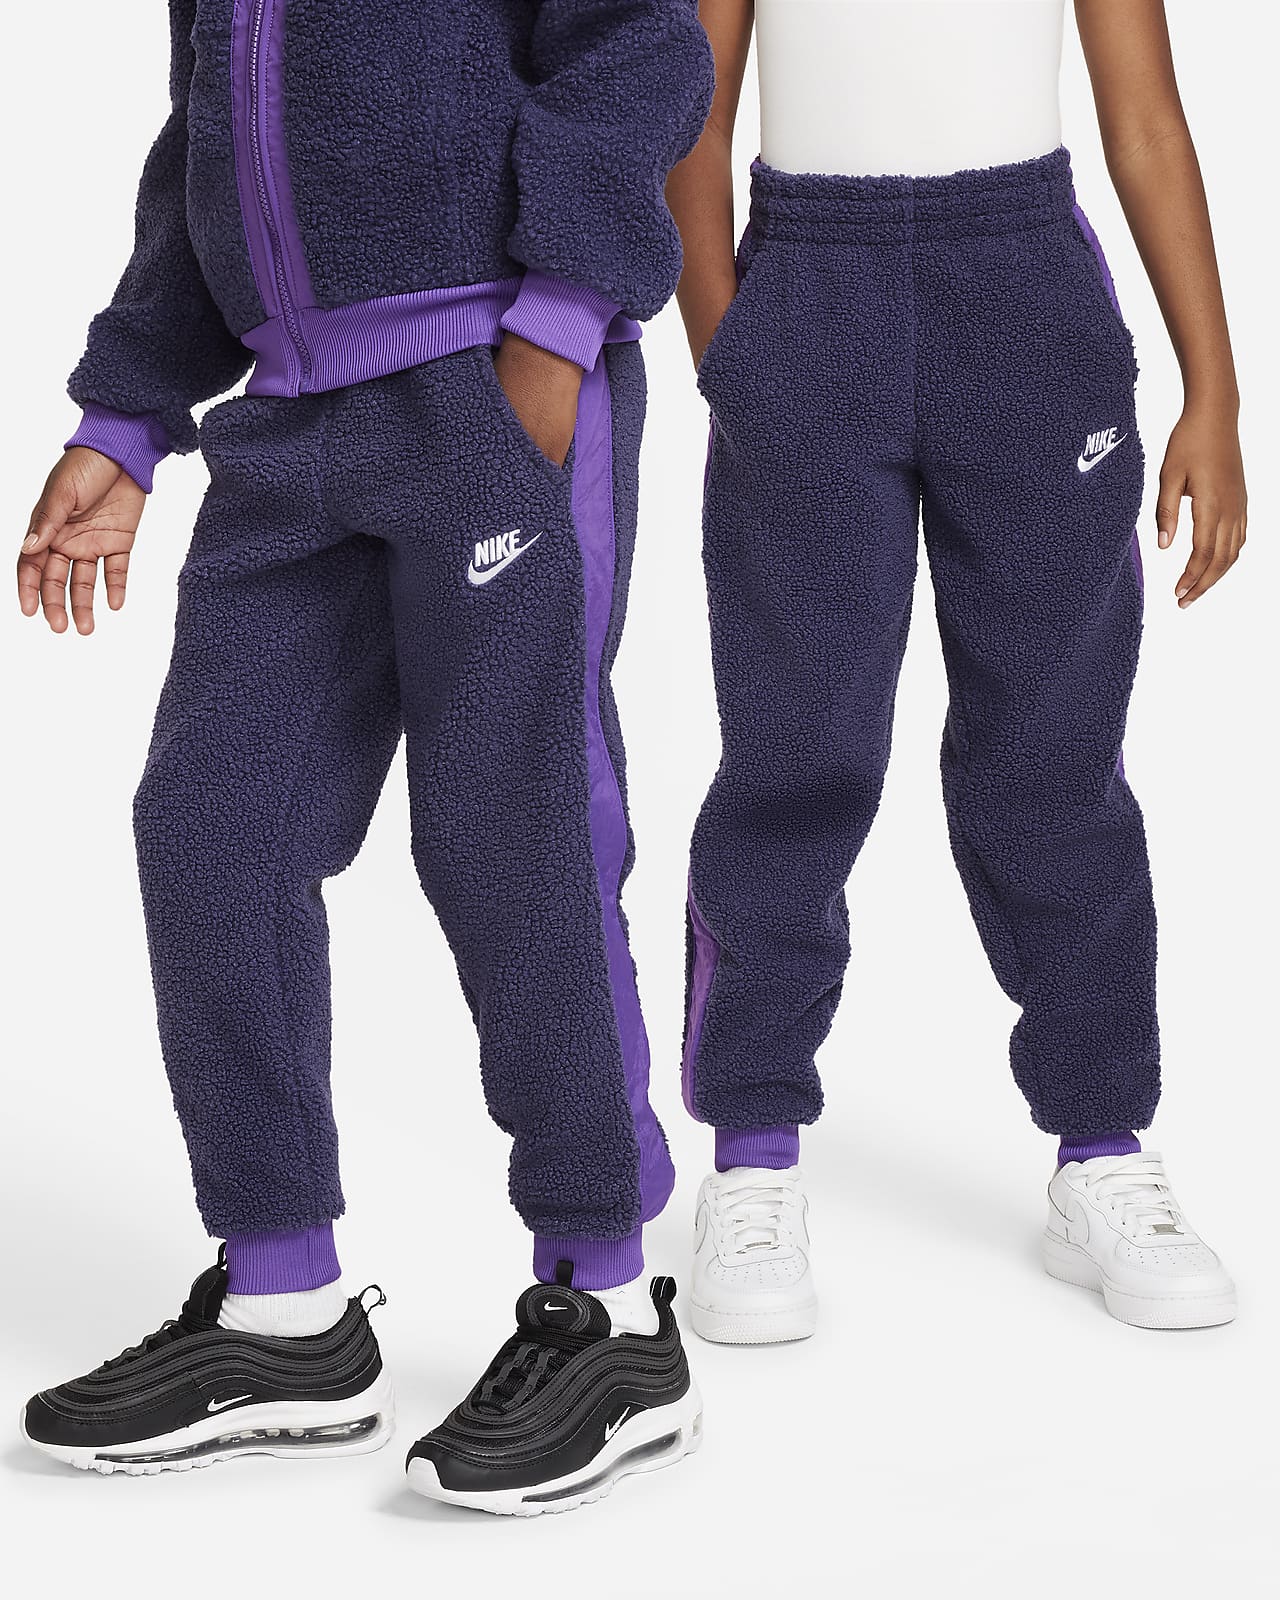 Nike Sportswear Club Fleece Jogger Purple